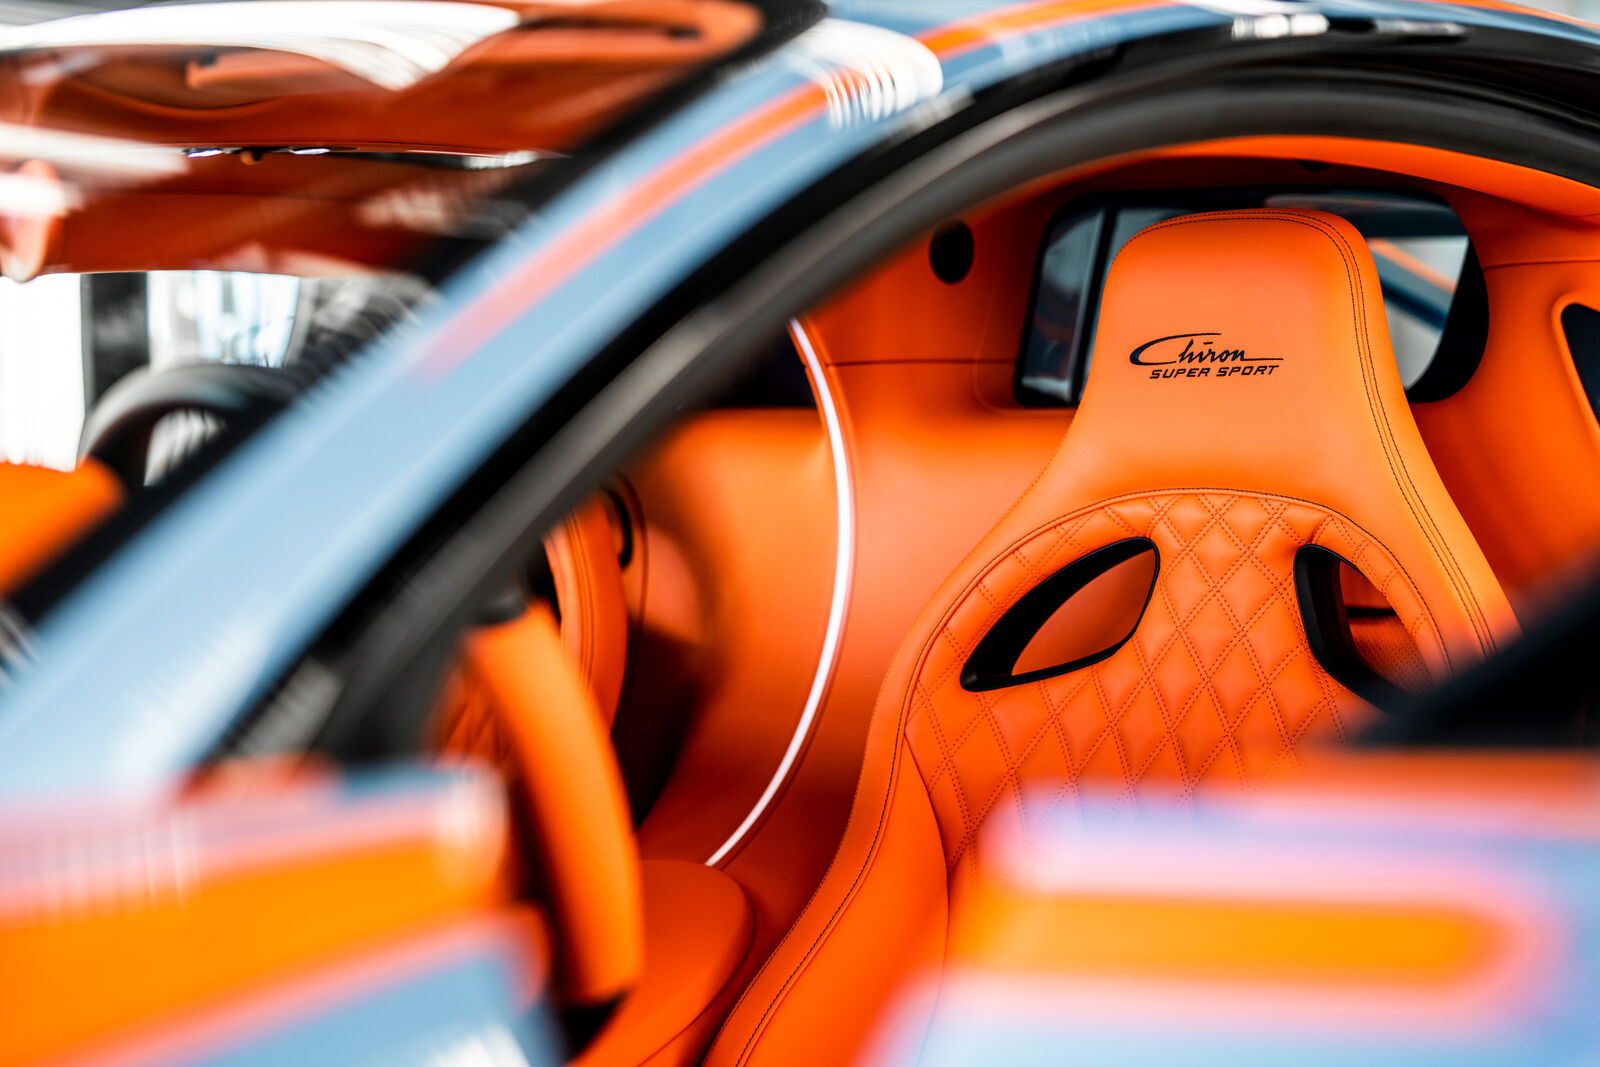 Bugatti Chiron Super Sport interior